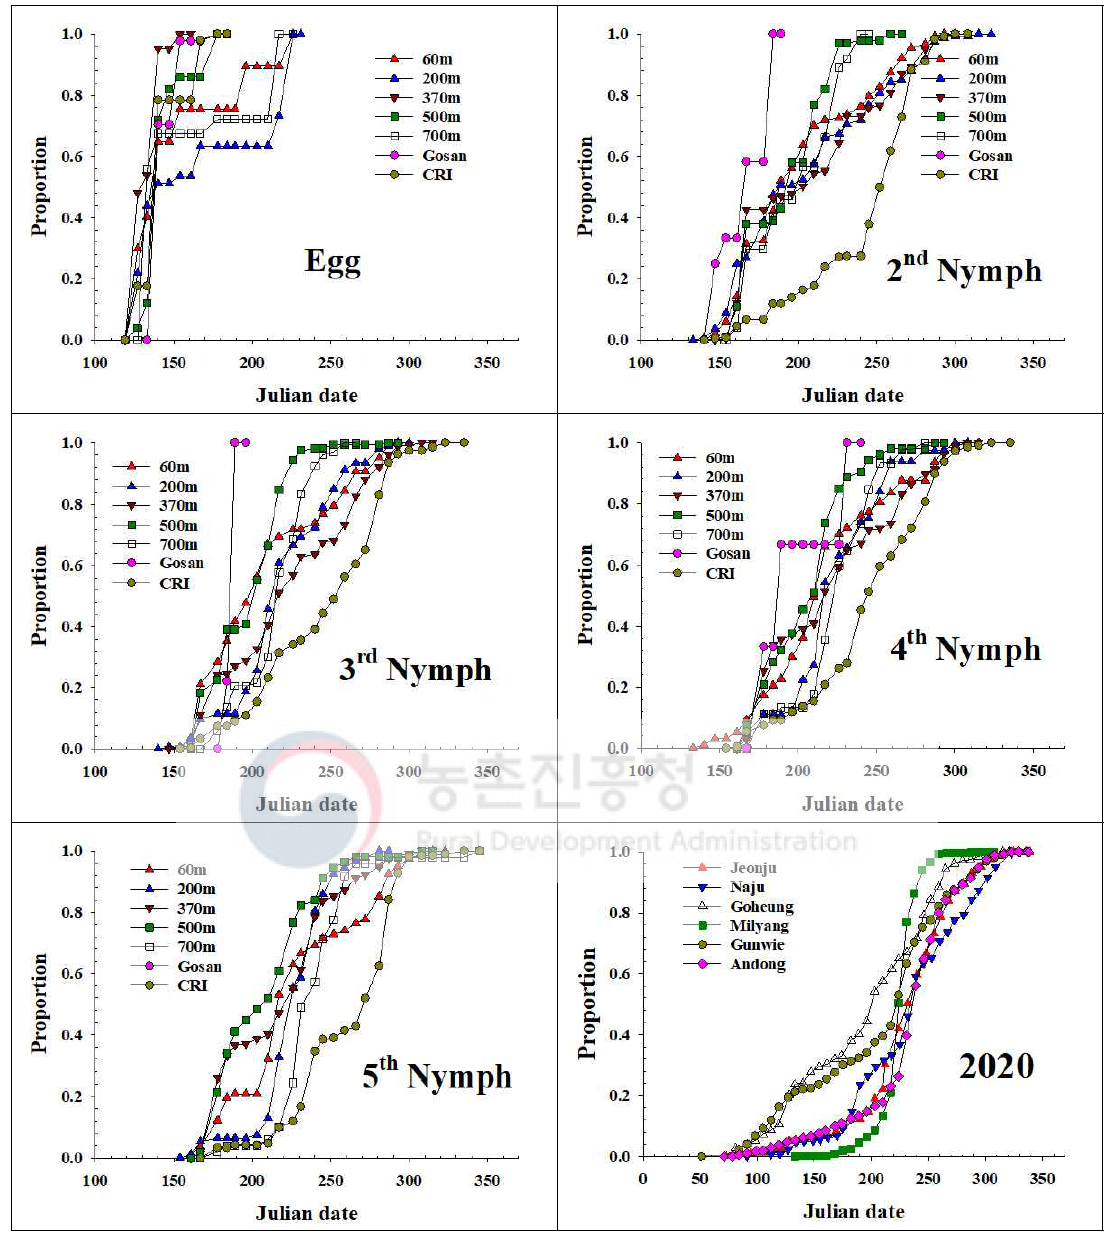 제주지역 톱다리개미허리노린재 발육단계별 개체수 누적증가 지역간 비교(2020)